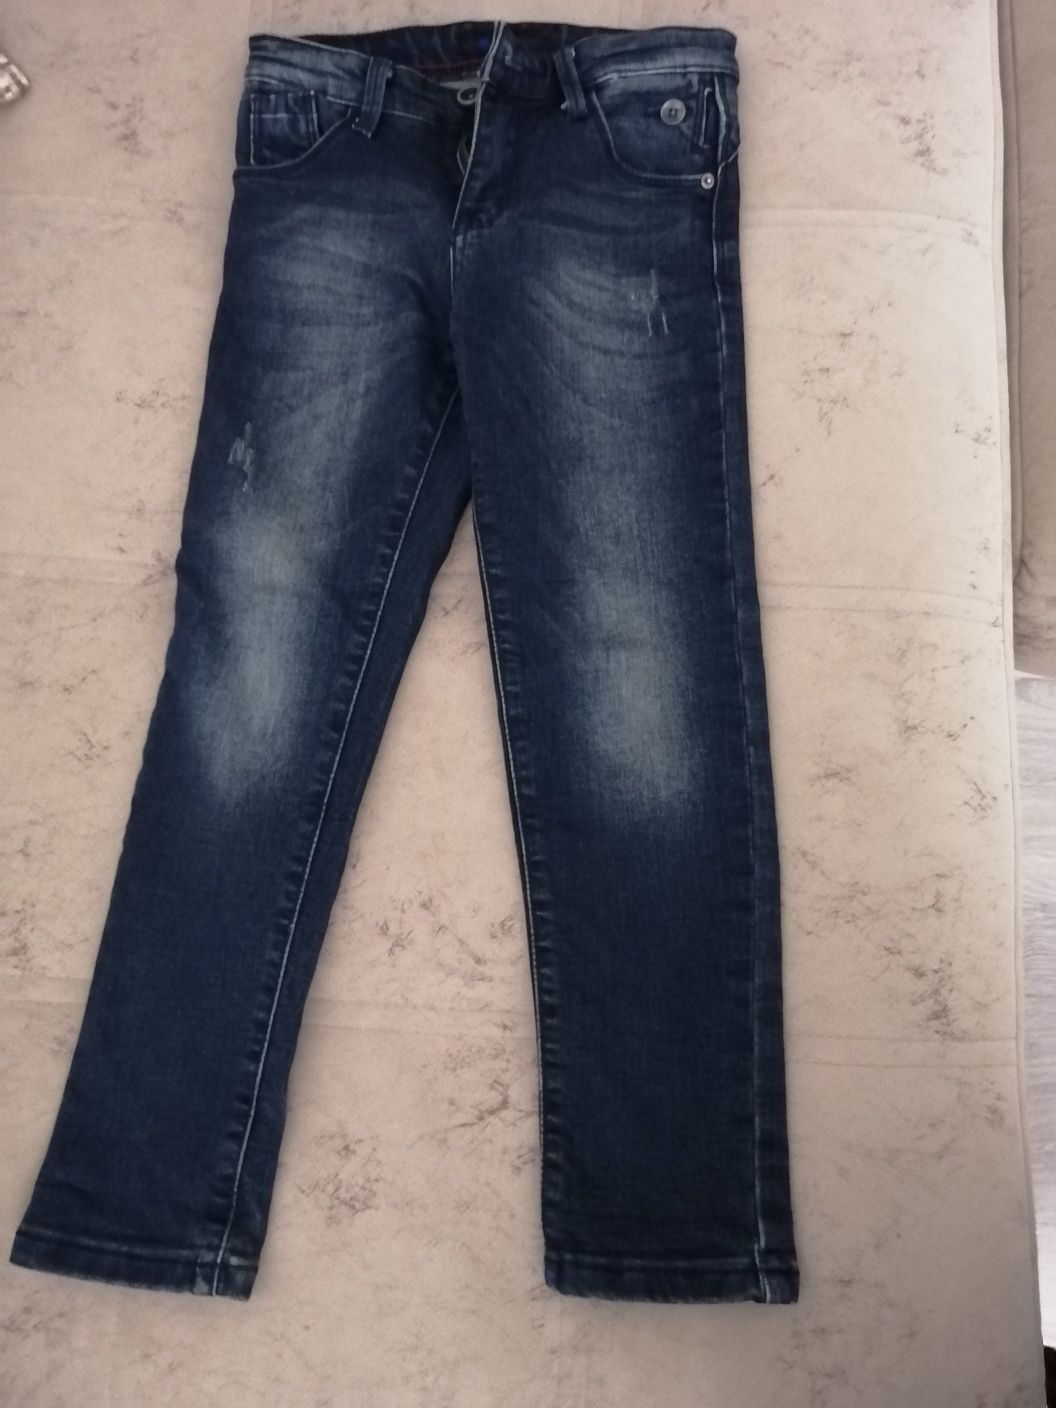 Продам джинсы размер 6-7 лет